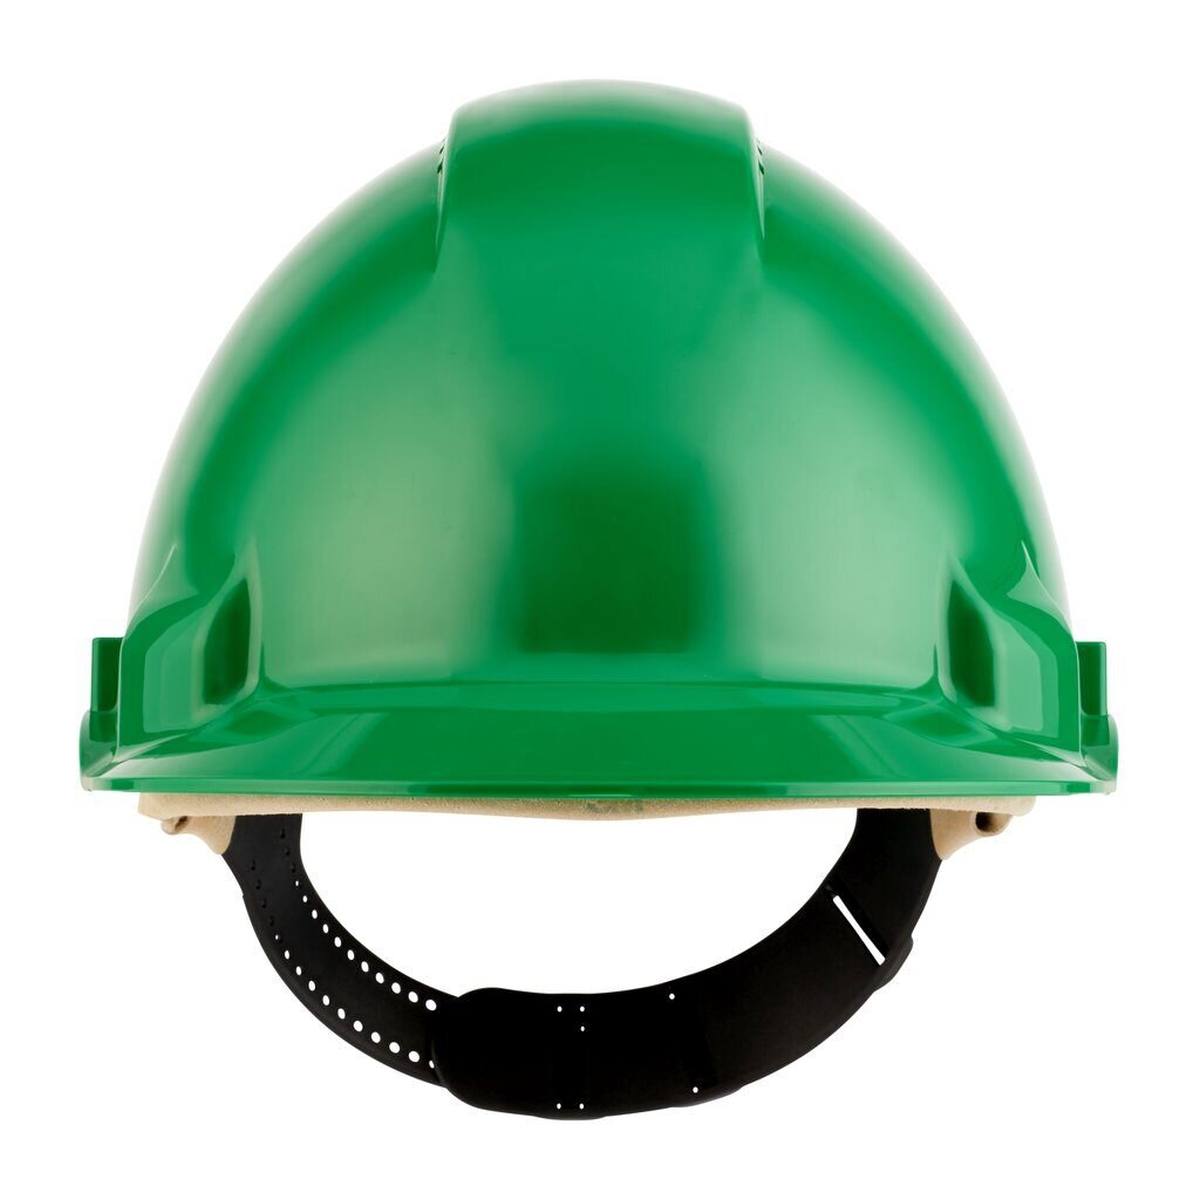 Casco de seguridad 3M G3000 G30DUG en verde, ventilado, con uvicator, pinlock y banda de sudor de cuero